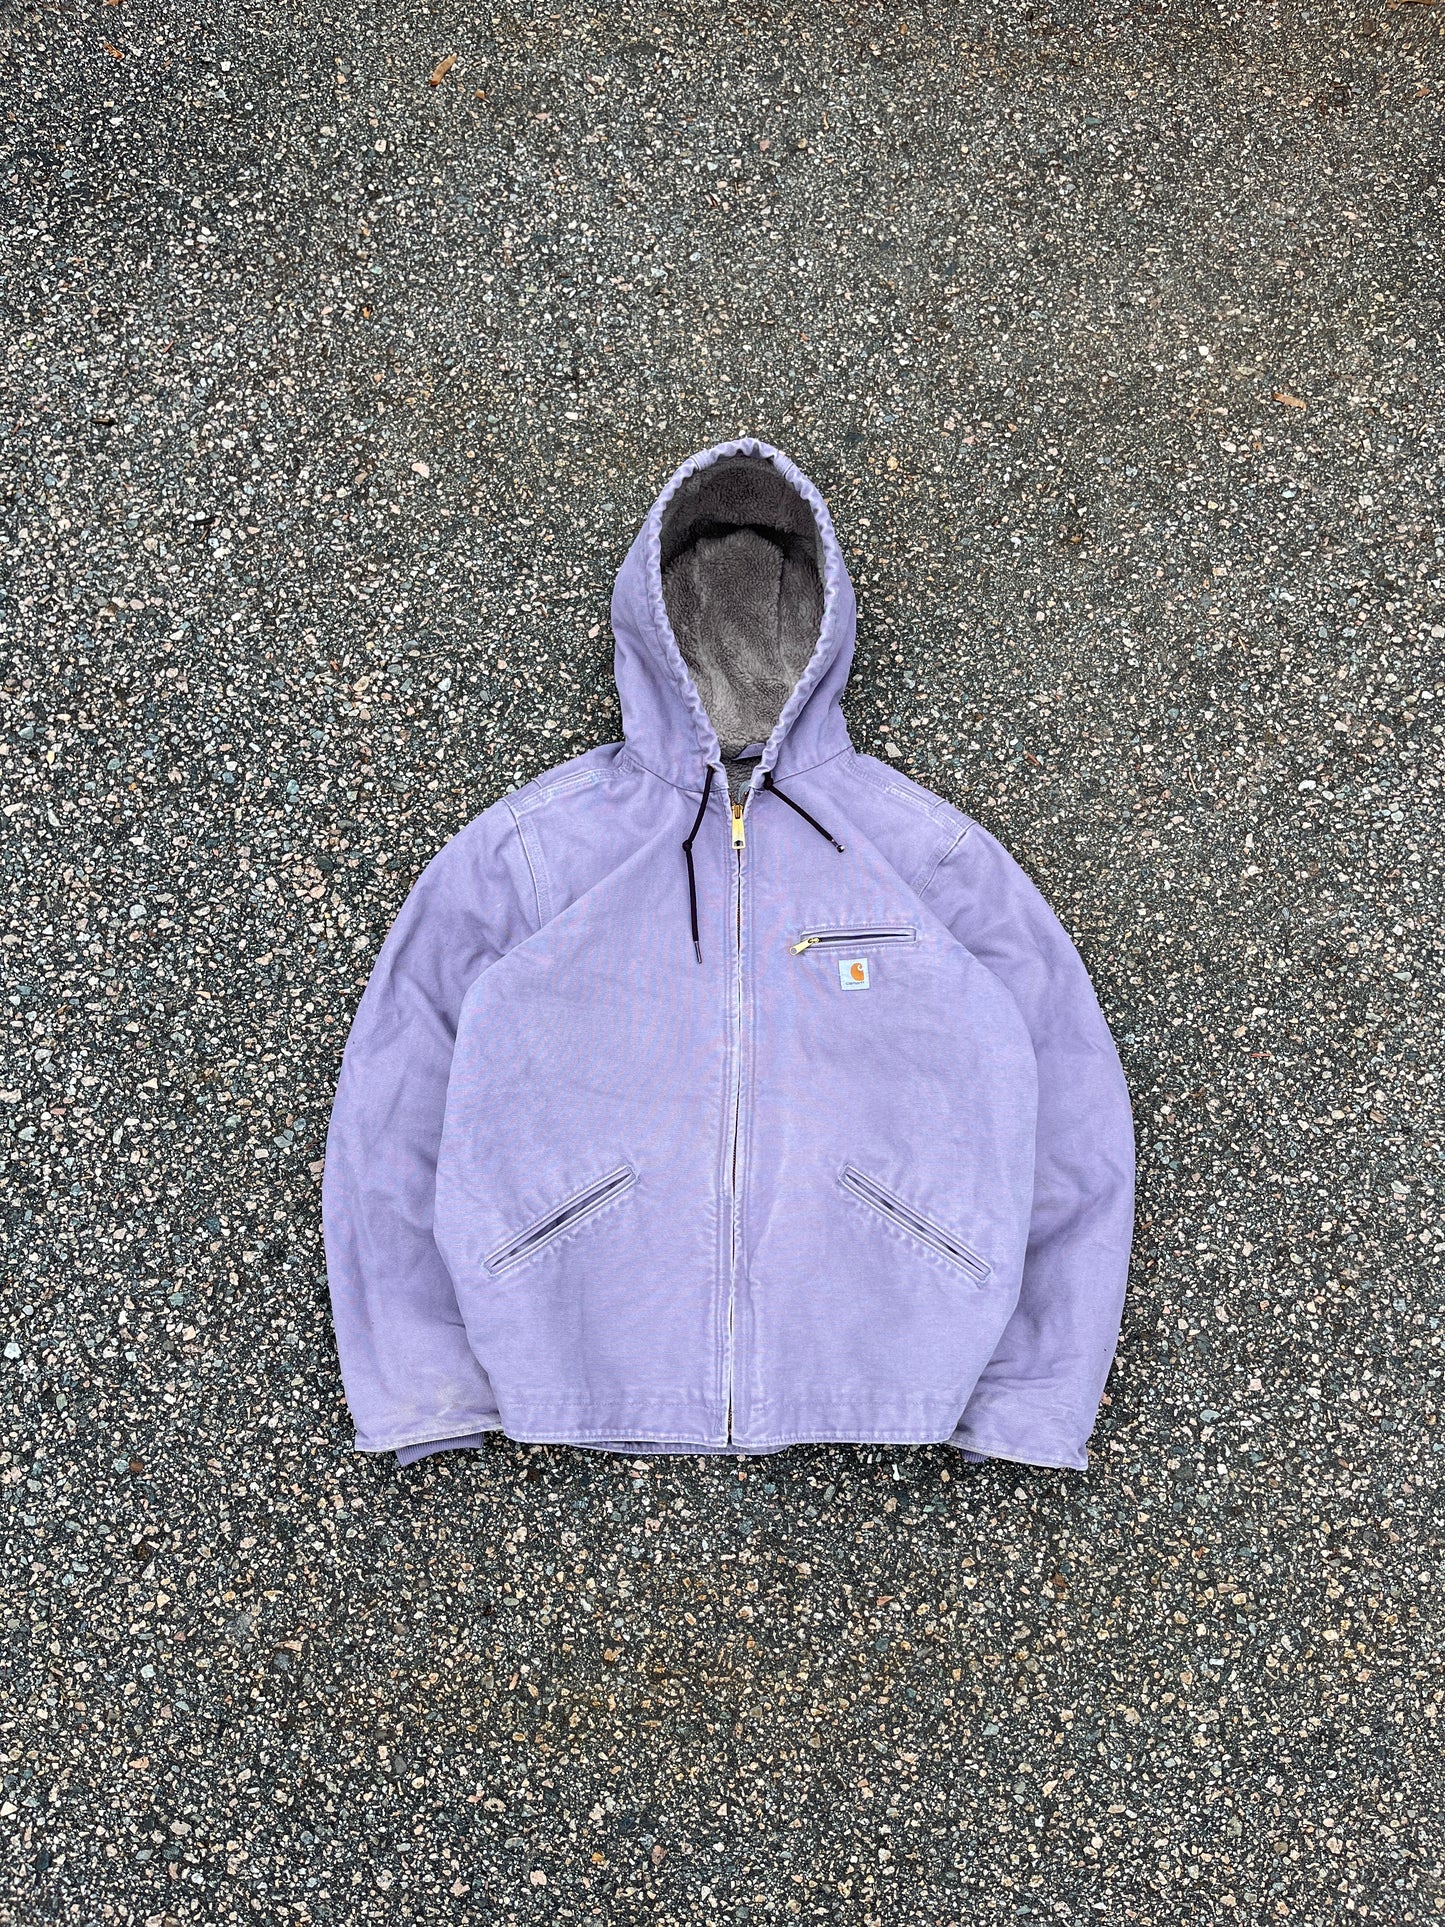 Faded Lavender Carhartt Sherpa Lined Jacket - Medium